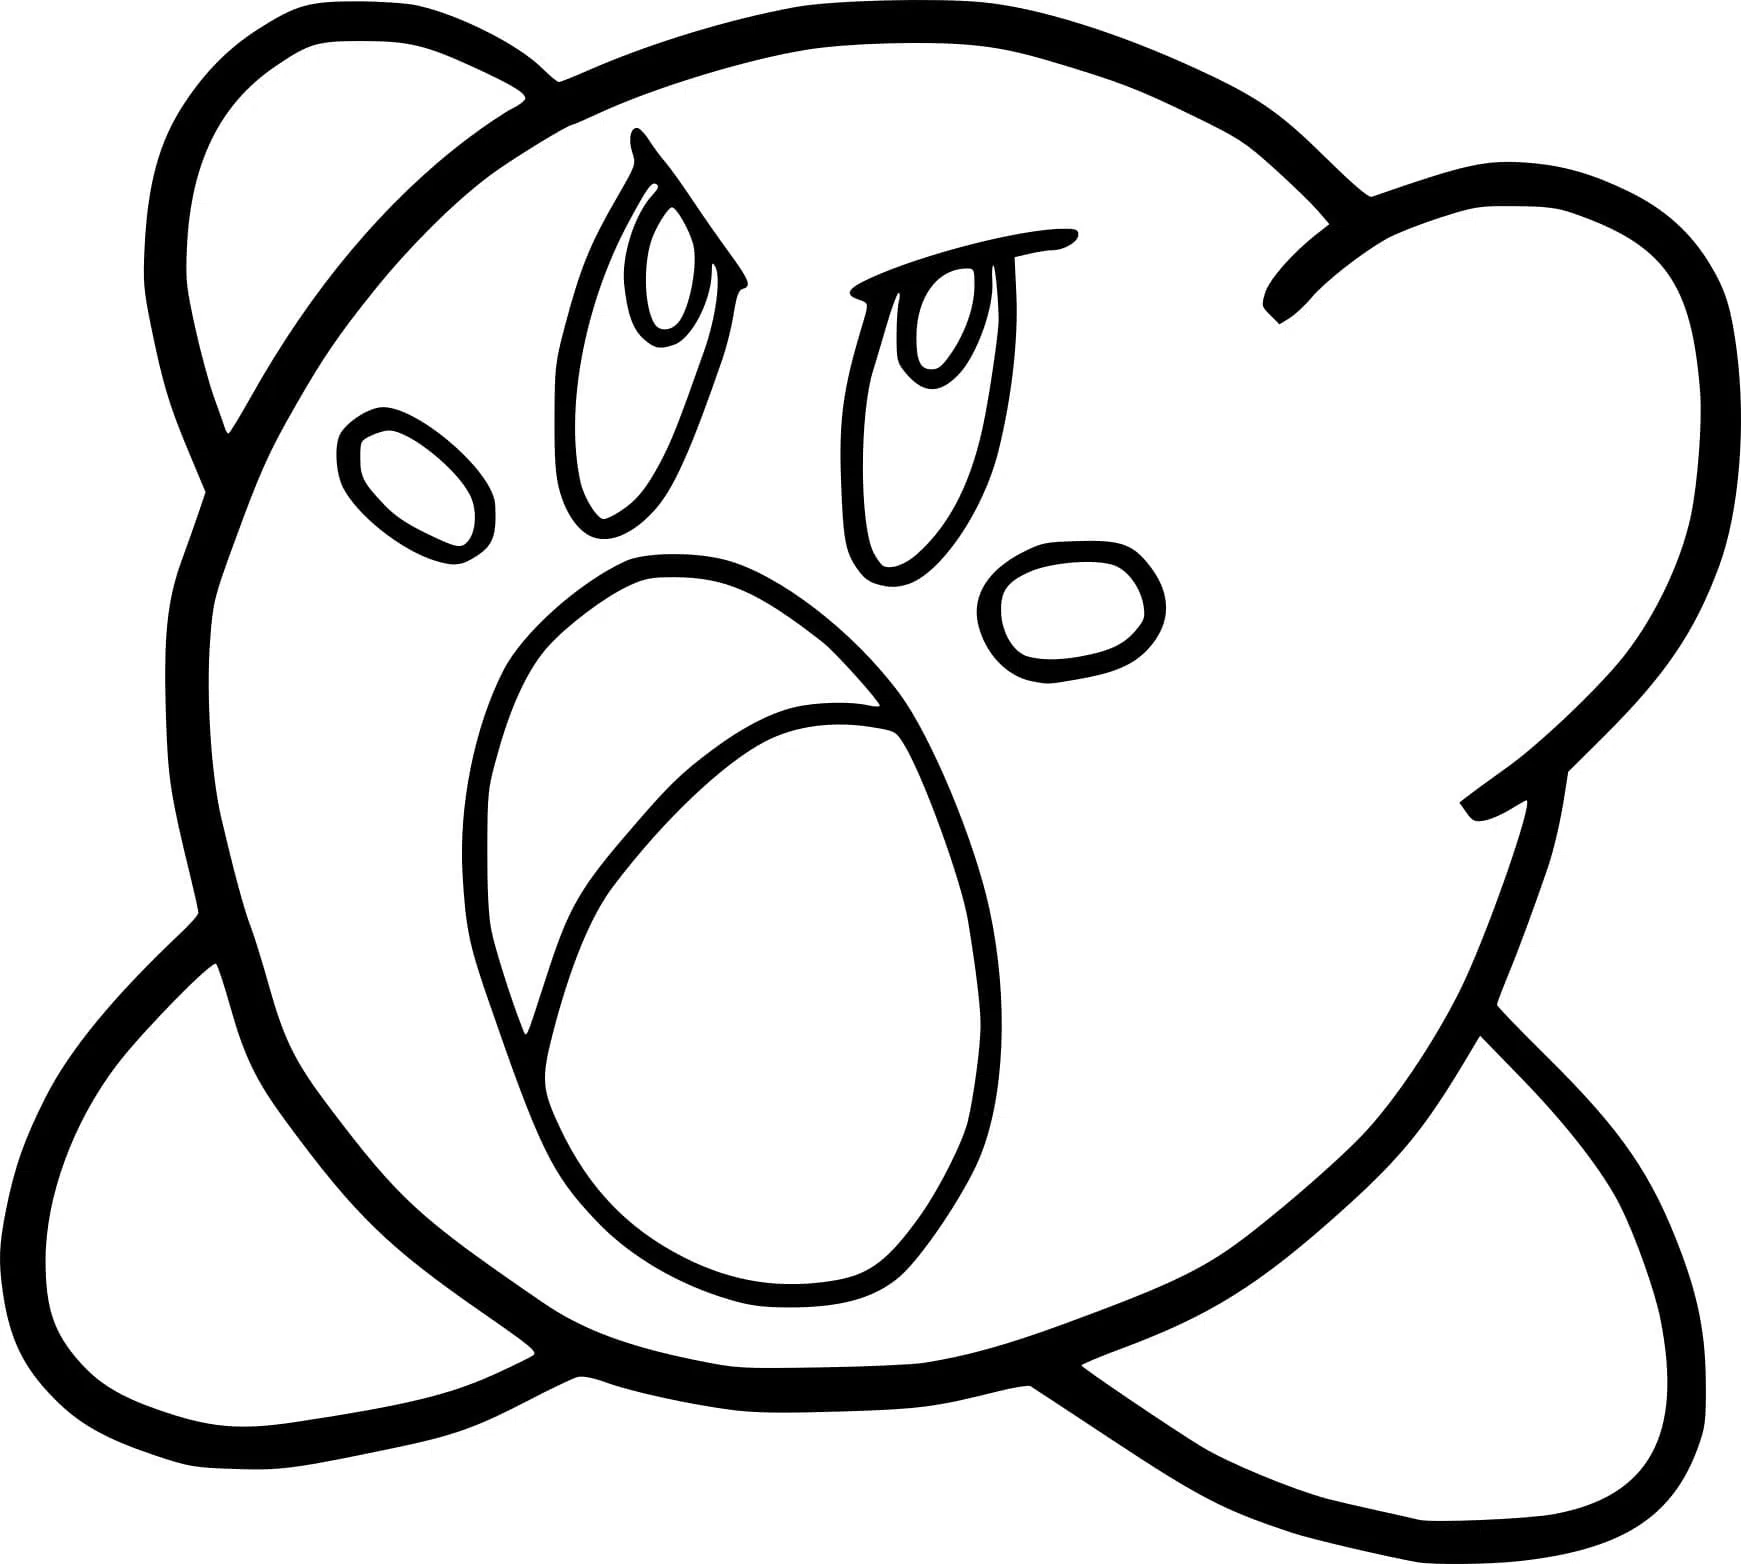 Kirby 04